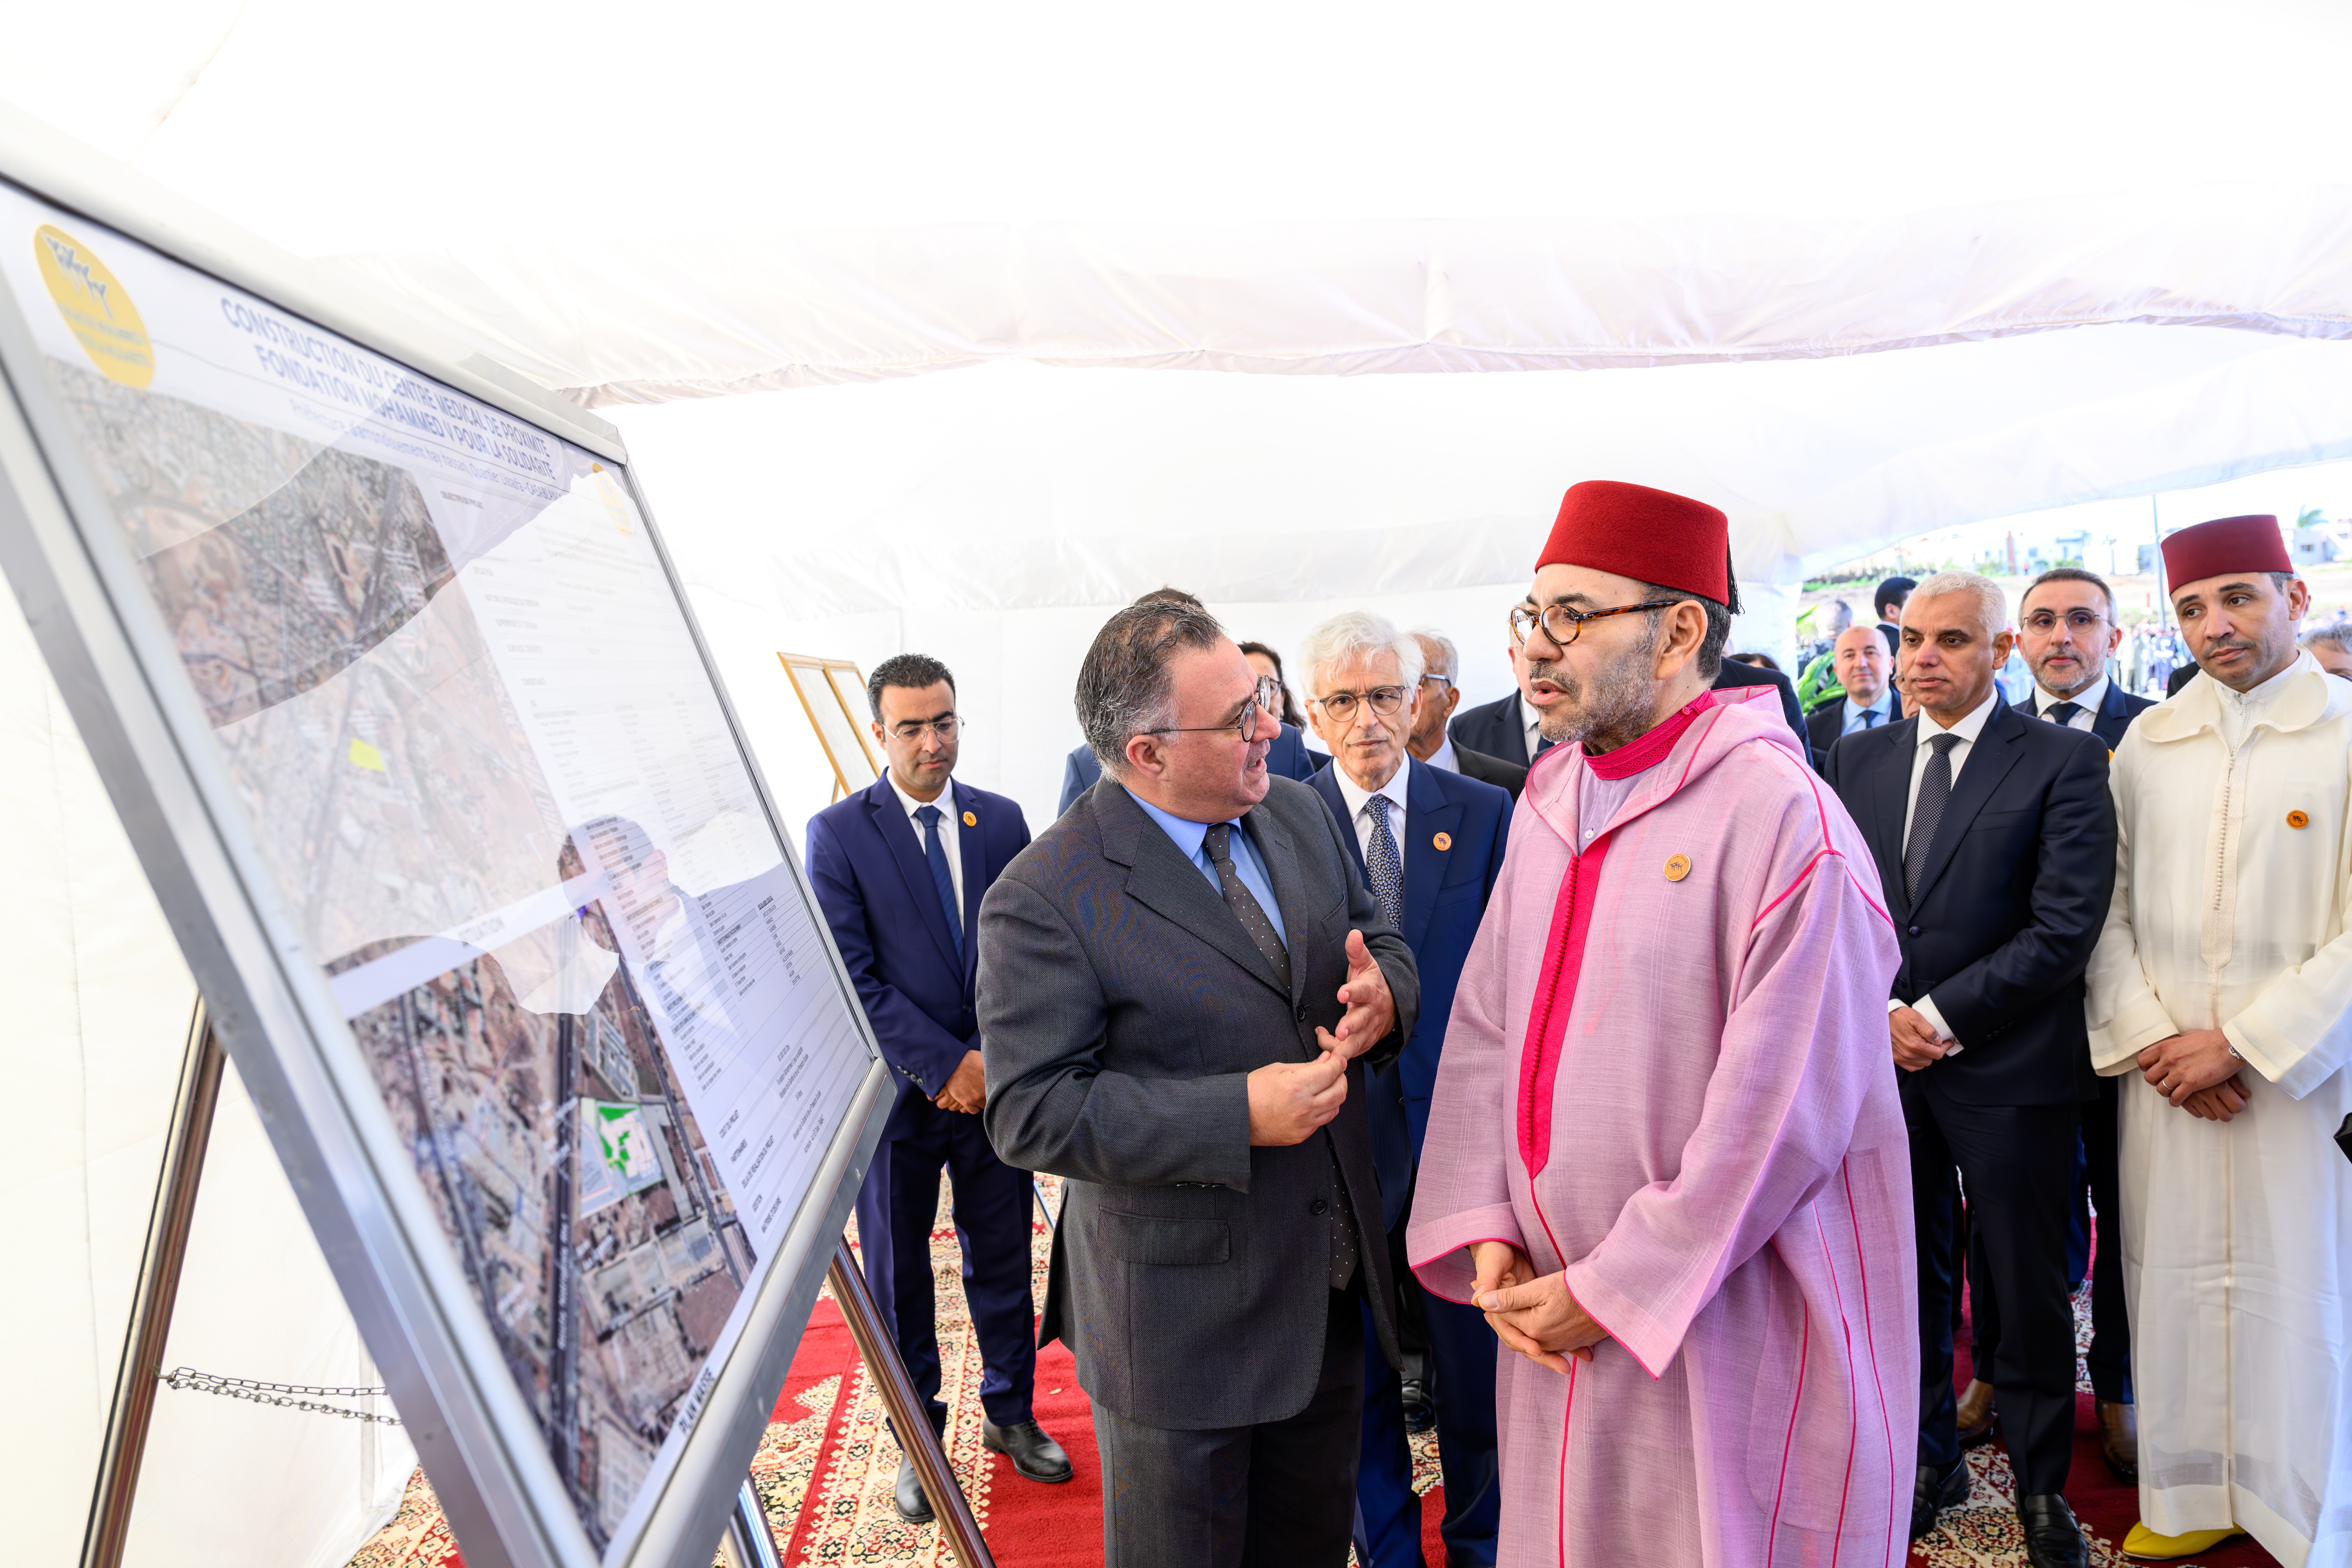 الملك محمد السادس لدى وضعه الحجر الاساس في الدار البيضاء على وضع الحجر الأساس لـ